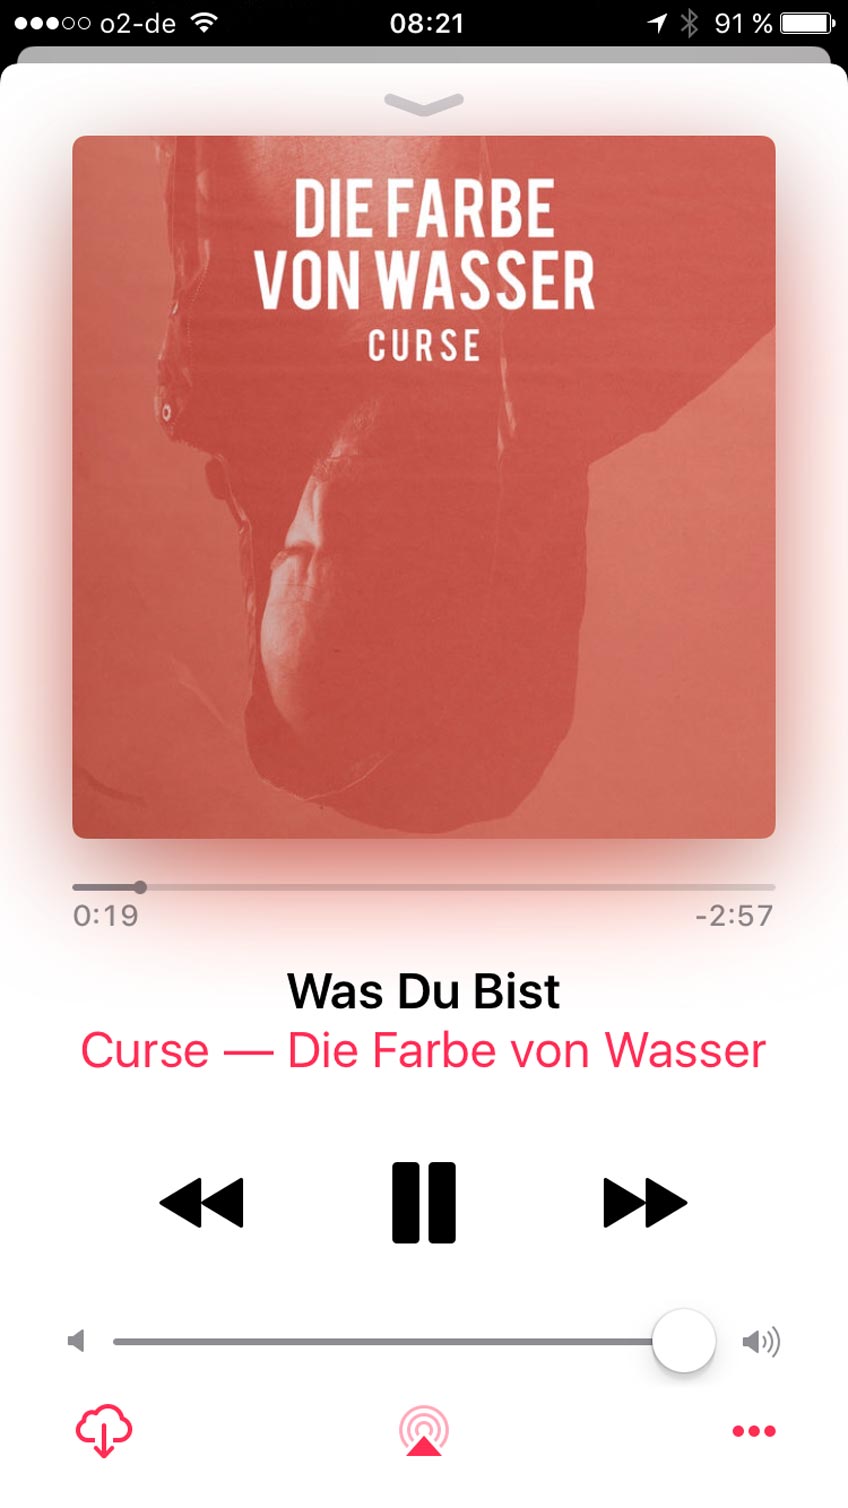 Minden zurück im Musik-Business: Curse veröffentlicht 8. Album